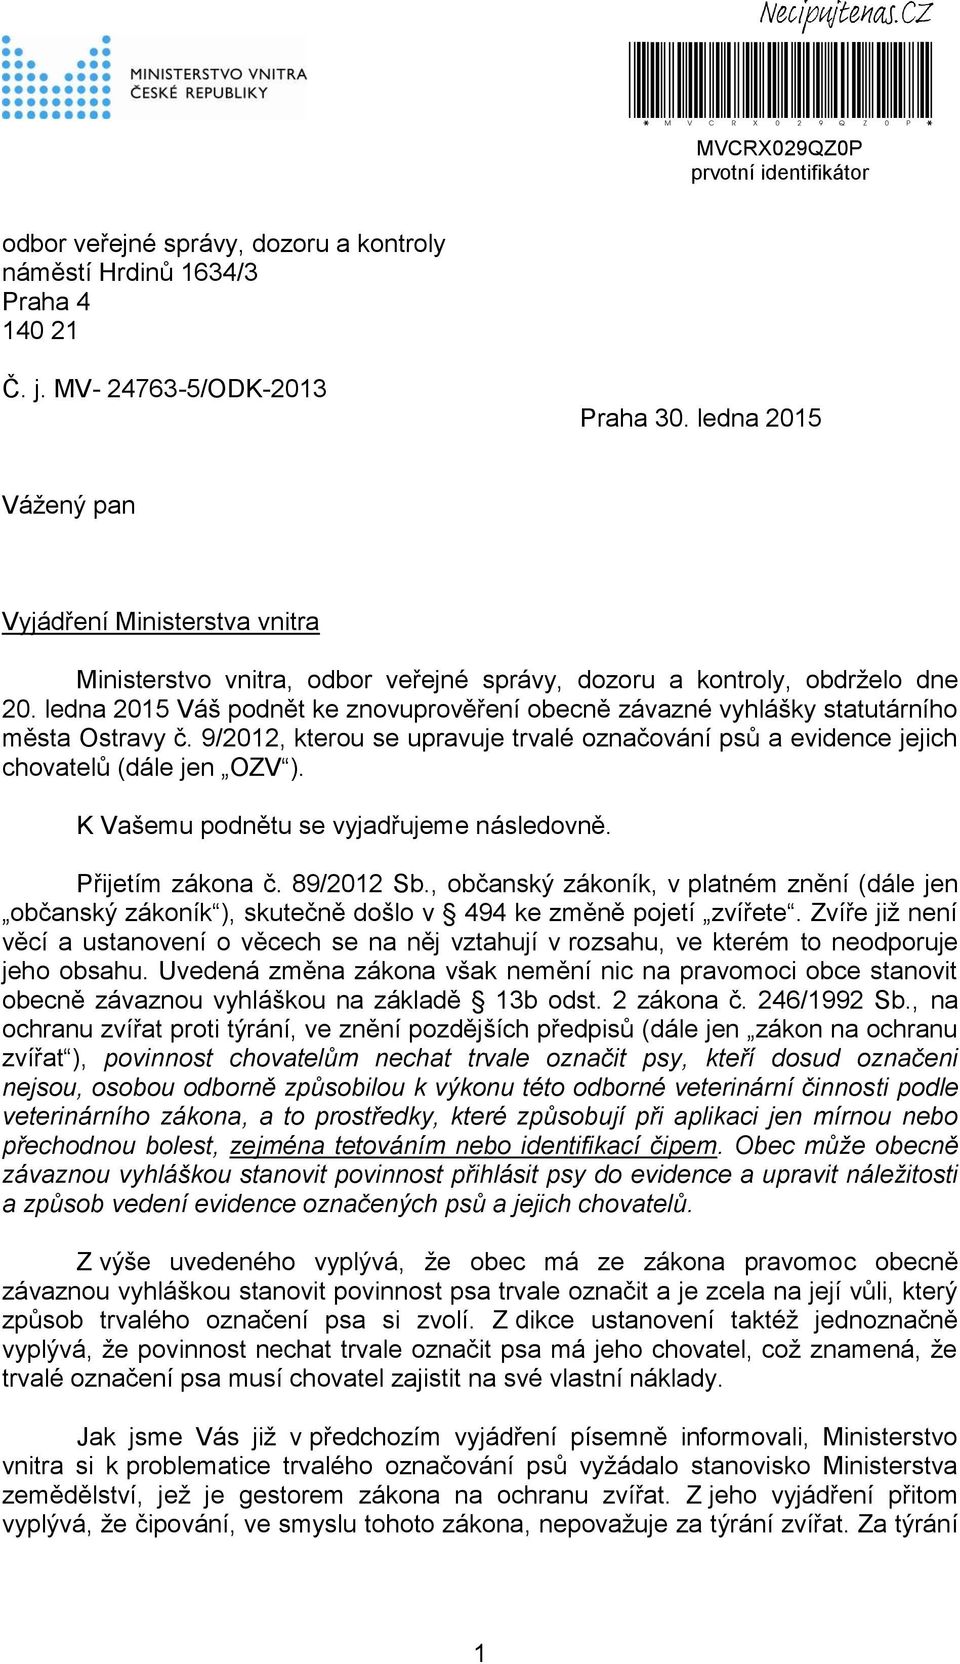 ledna 2015 Váš podnět ke znovuprověření obecně závazné vyhlášky statutárního města Ostravy č. 9/2012, kterou se upravuje trvalé označování psů a evidence jejich chovatelů (dále jen OZV ).